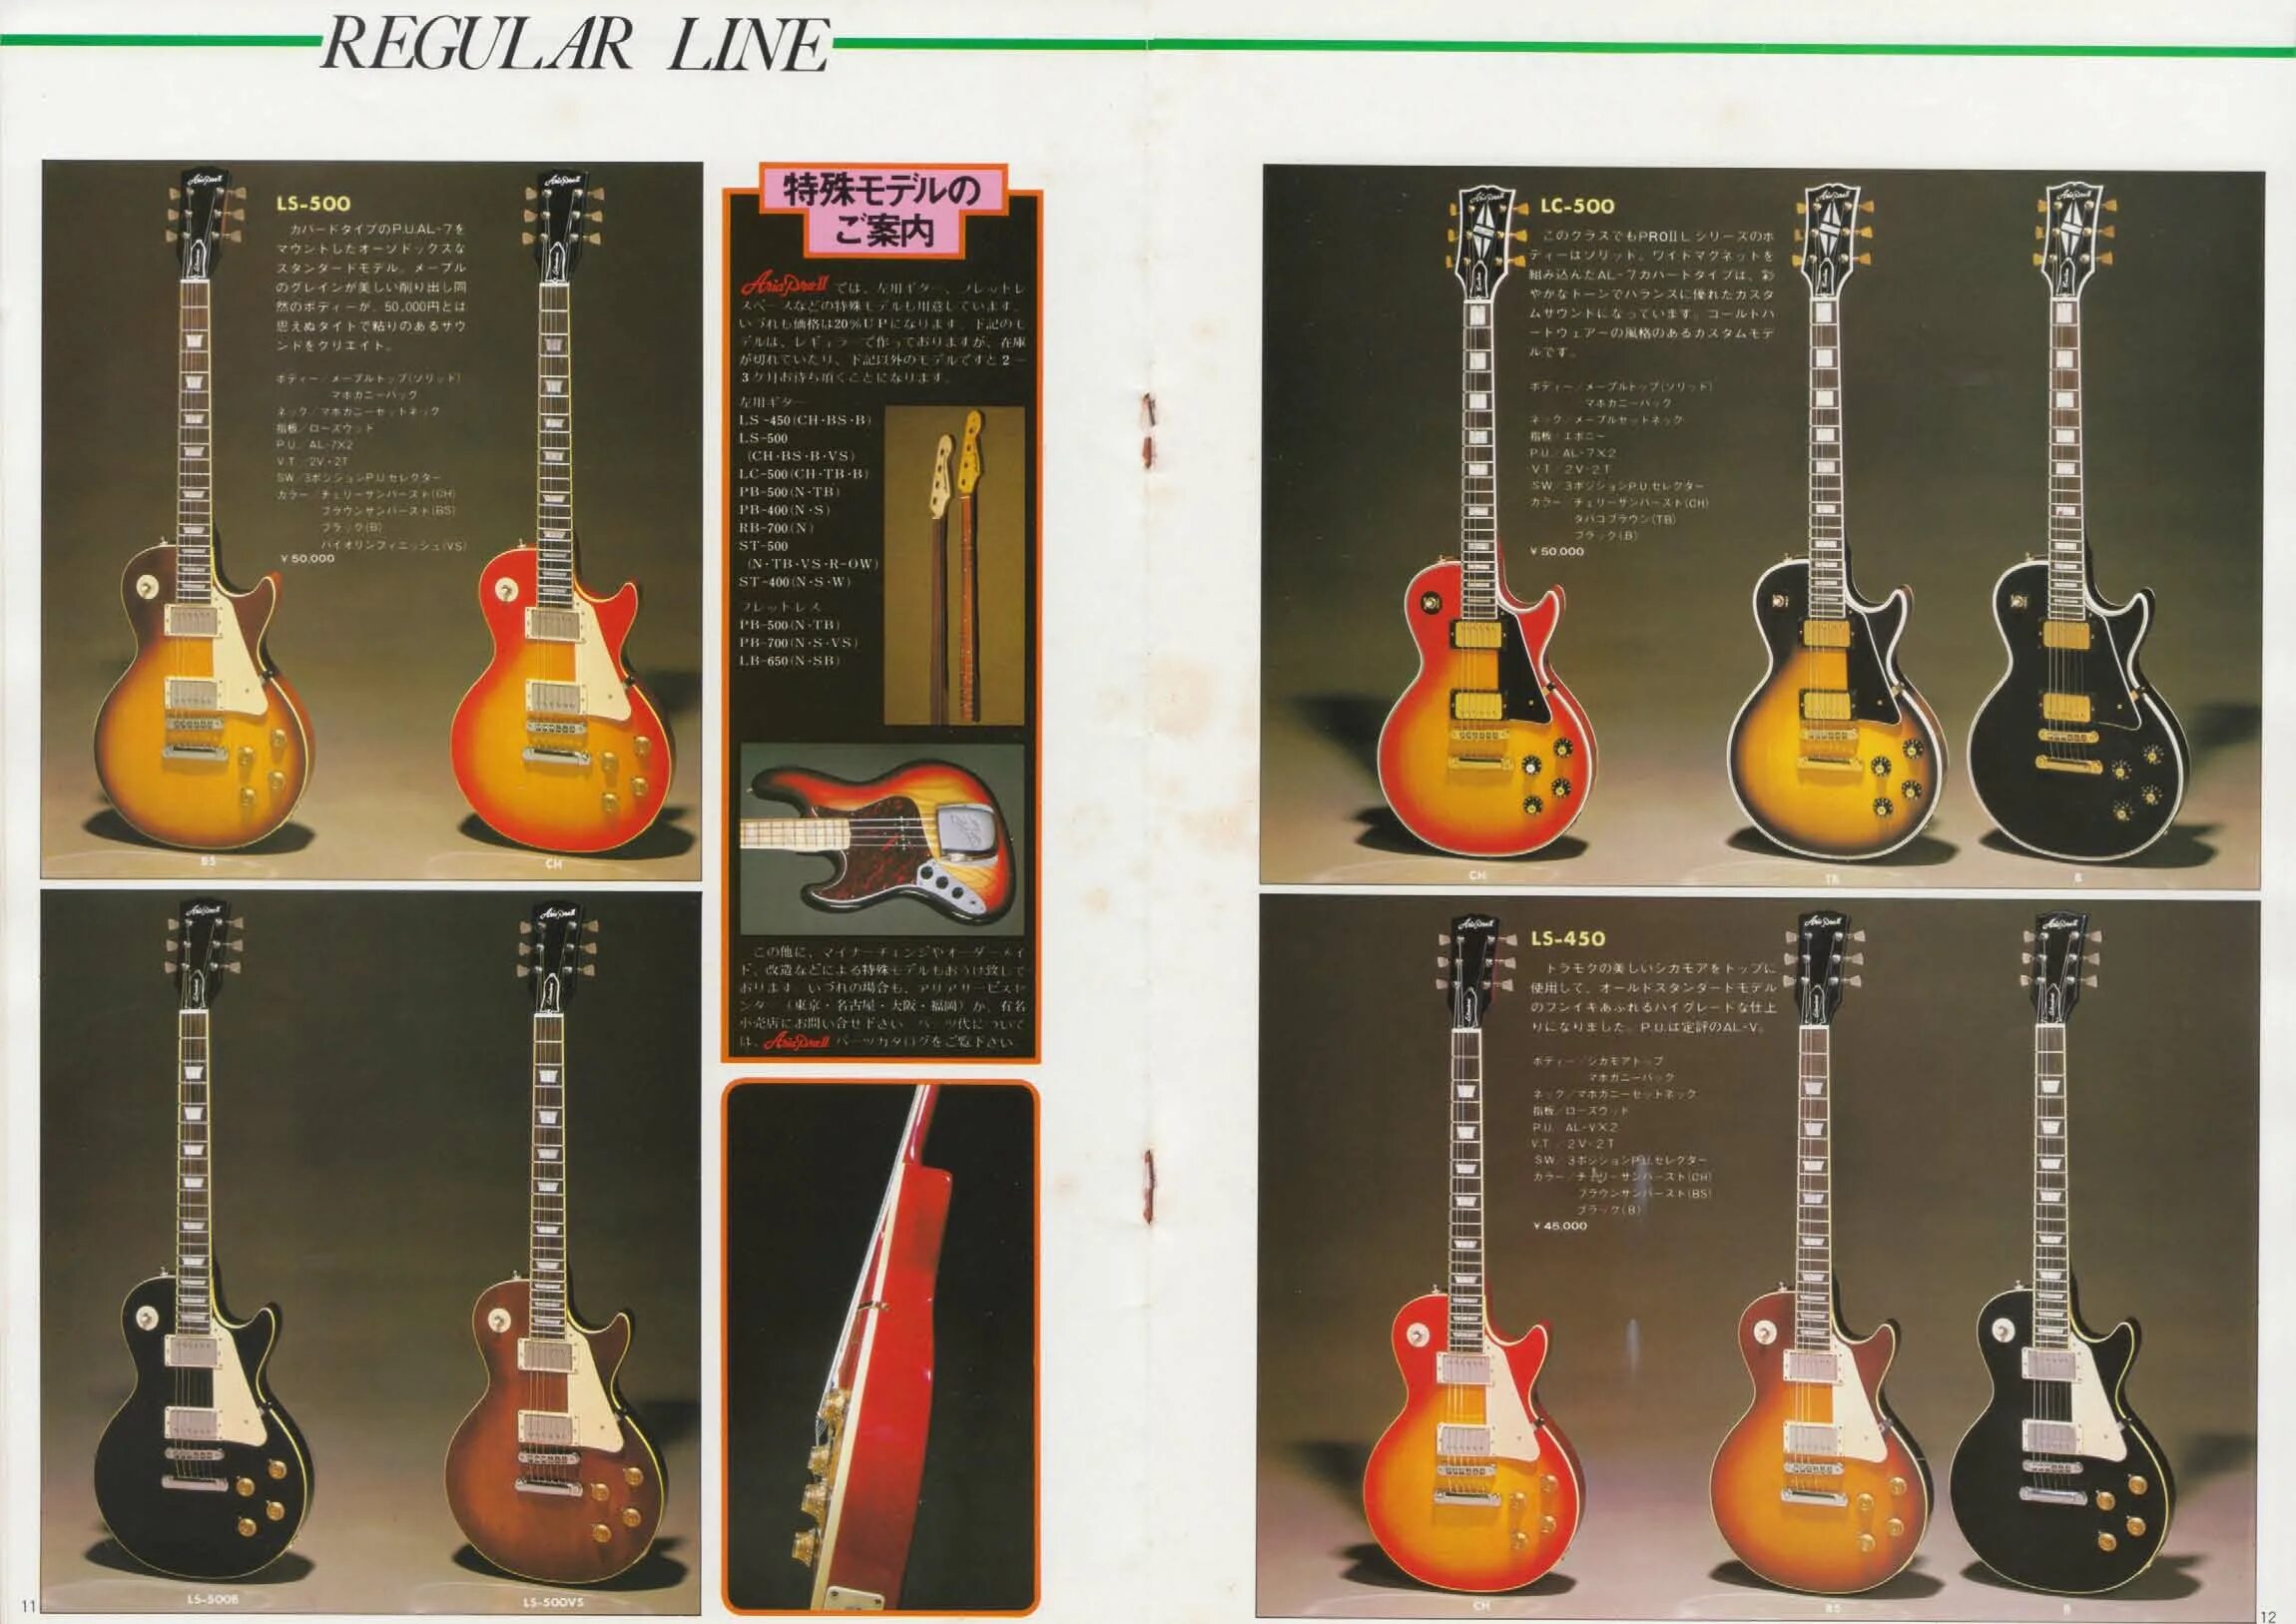 Ария каталог. Каталог гитар Aria Pro 2 1978. Les Paul Aria Pro 2 1978. Aria Pro 2 каталог. Каталог моделей 1978 года Aria Pro 2 les Paul.